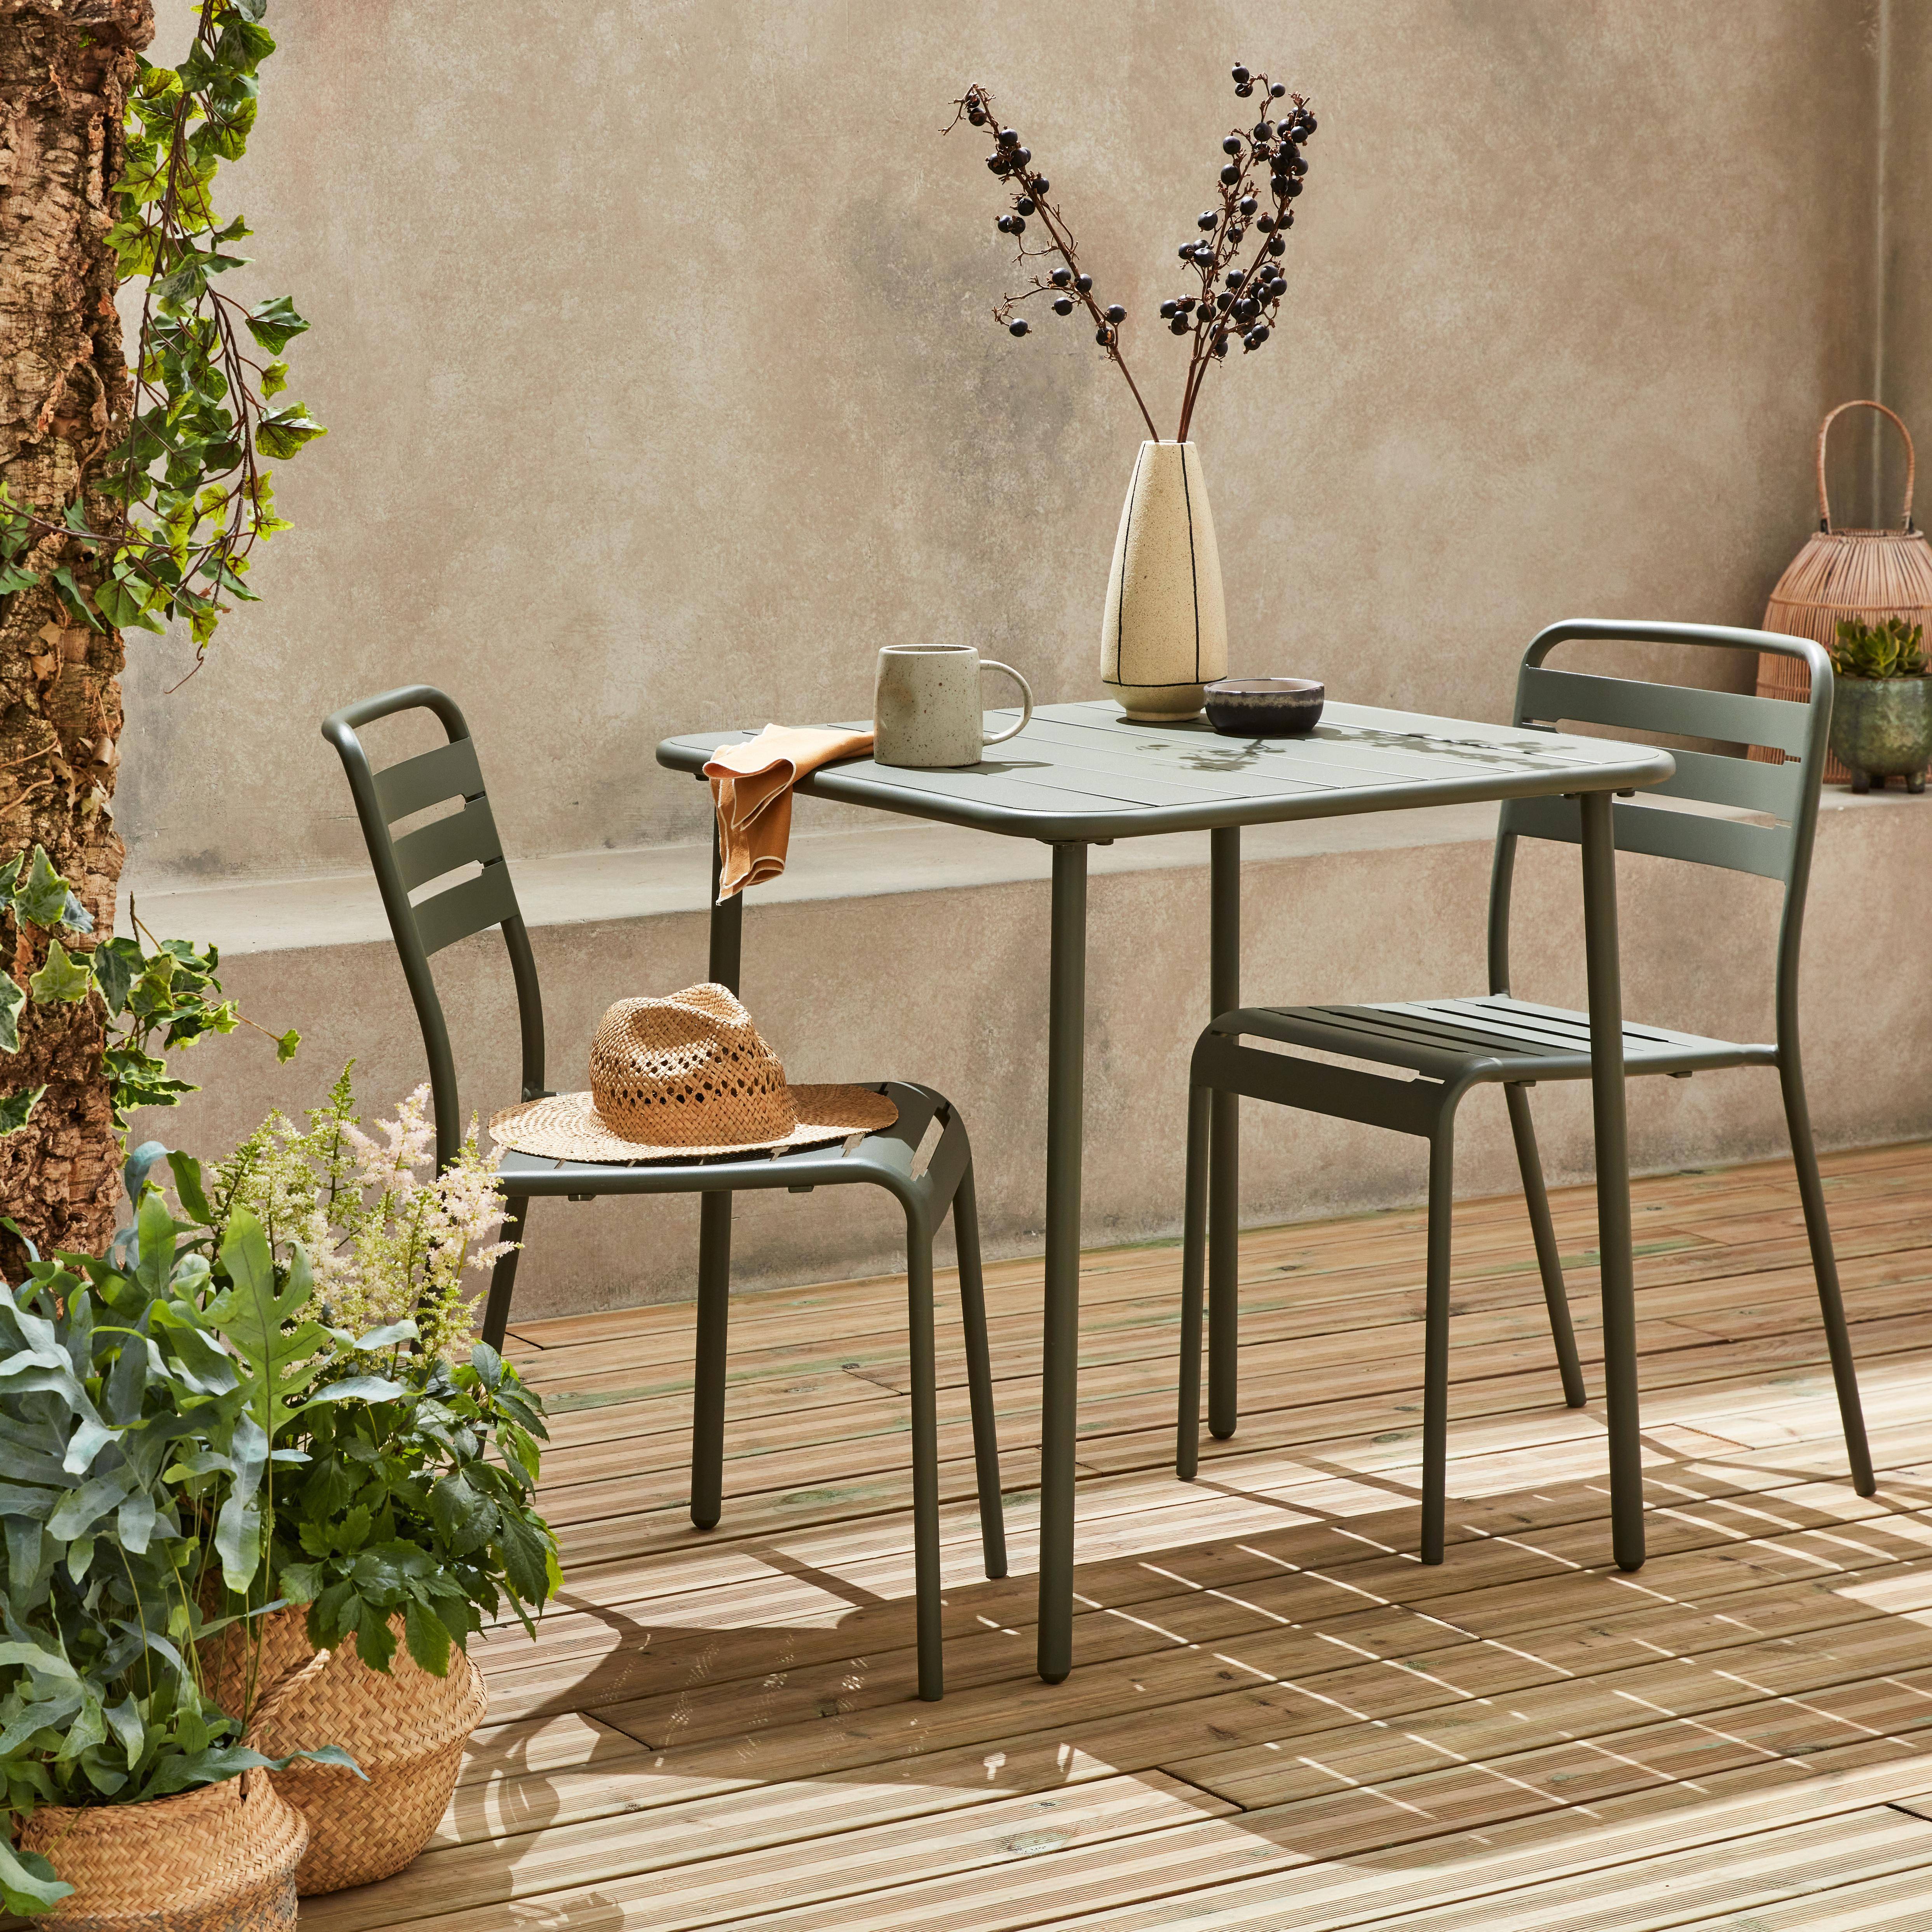 Metall-Gartentisch mit 2 Stühlen, 2 Personen, Amelia Savanne 70 x 70 cm,sweeek,Photo2